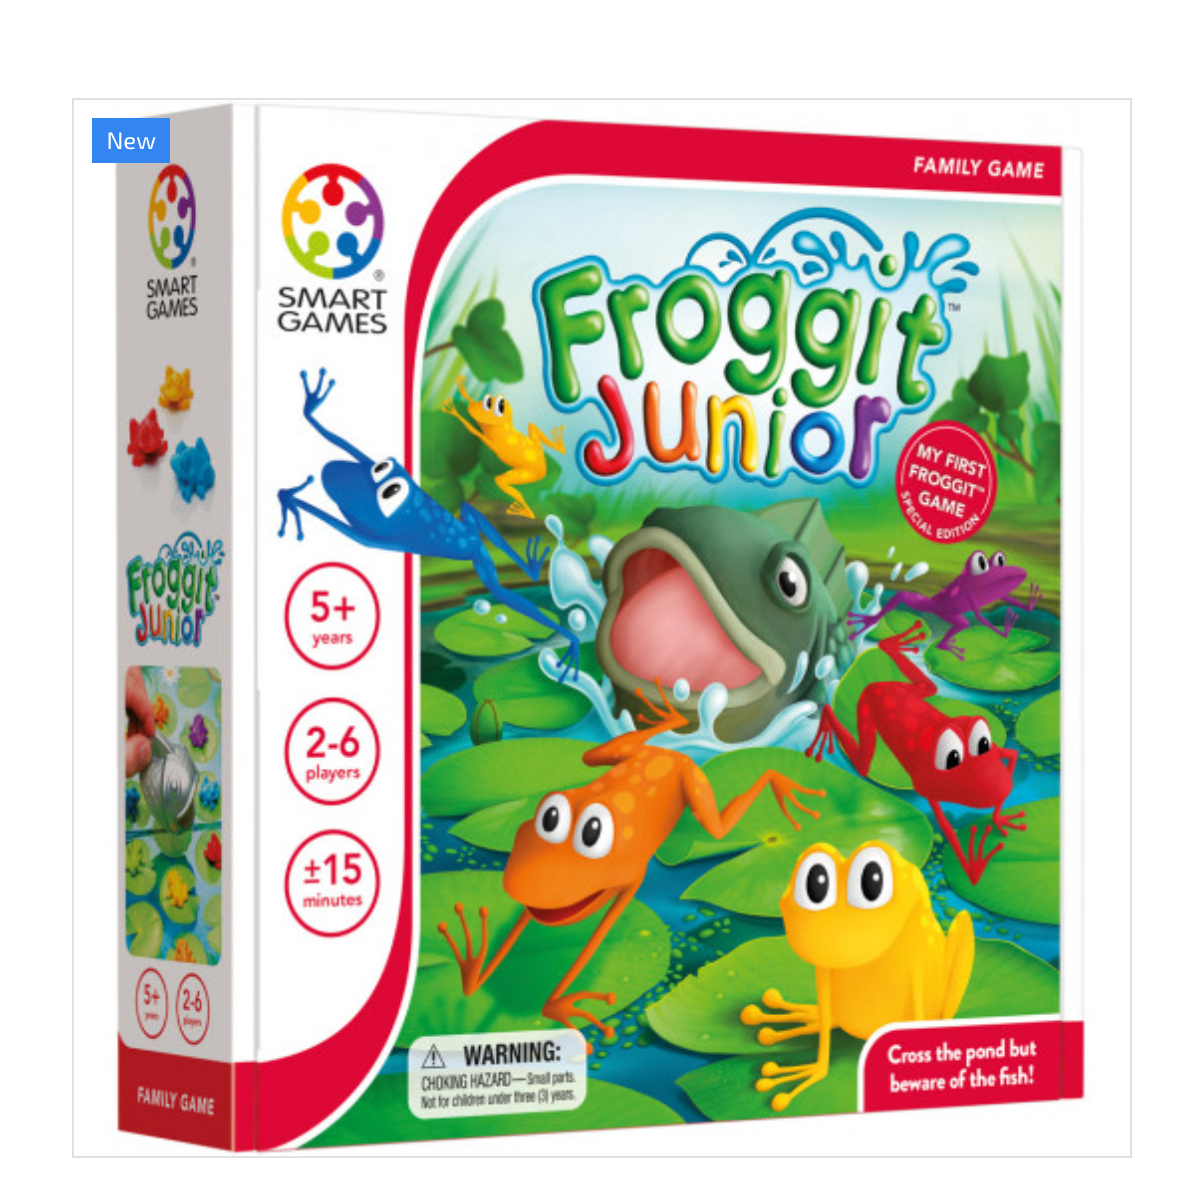 Froggit Junior